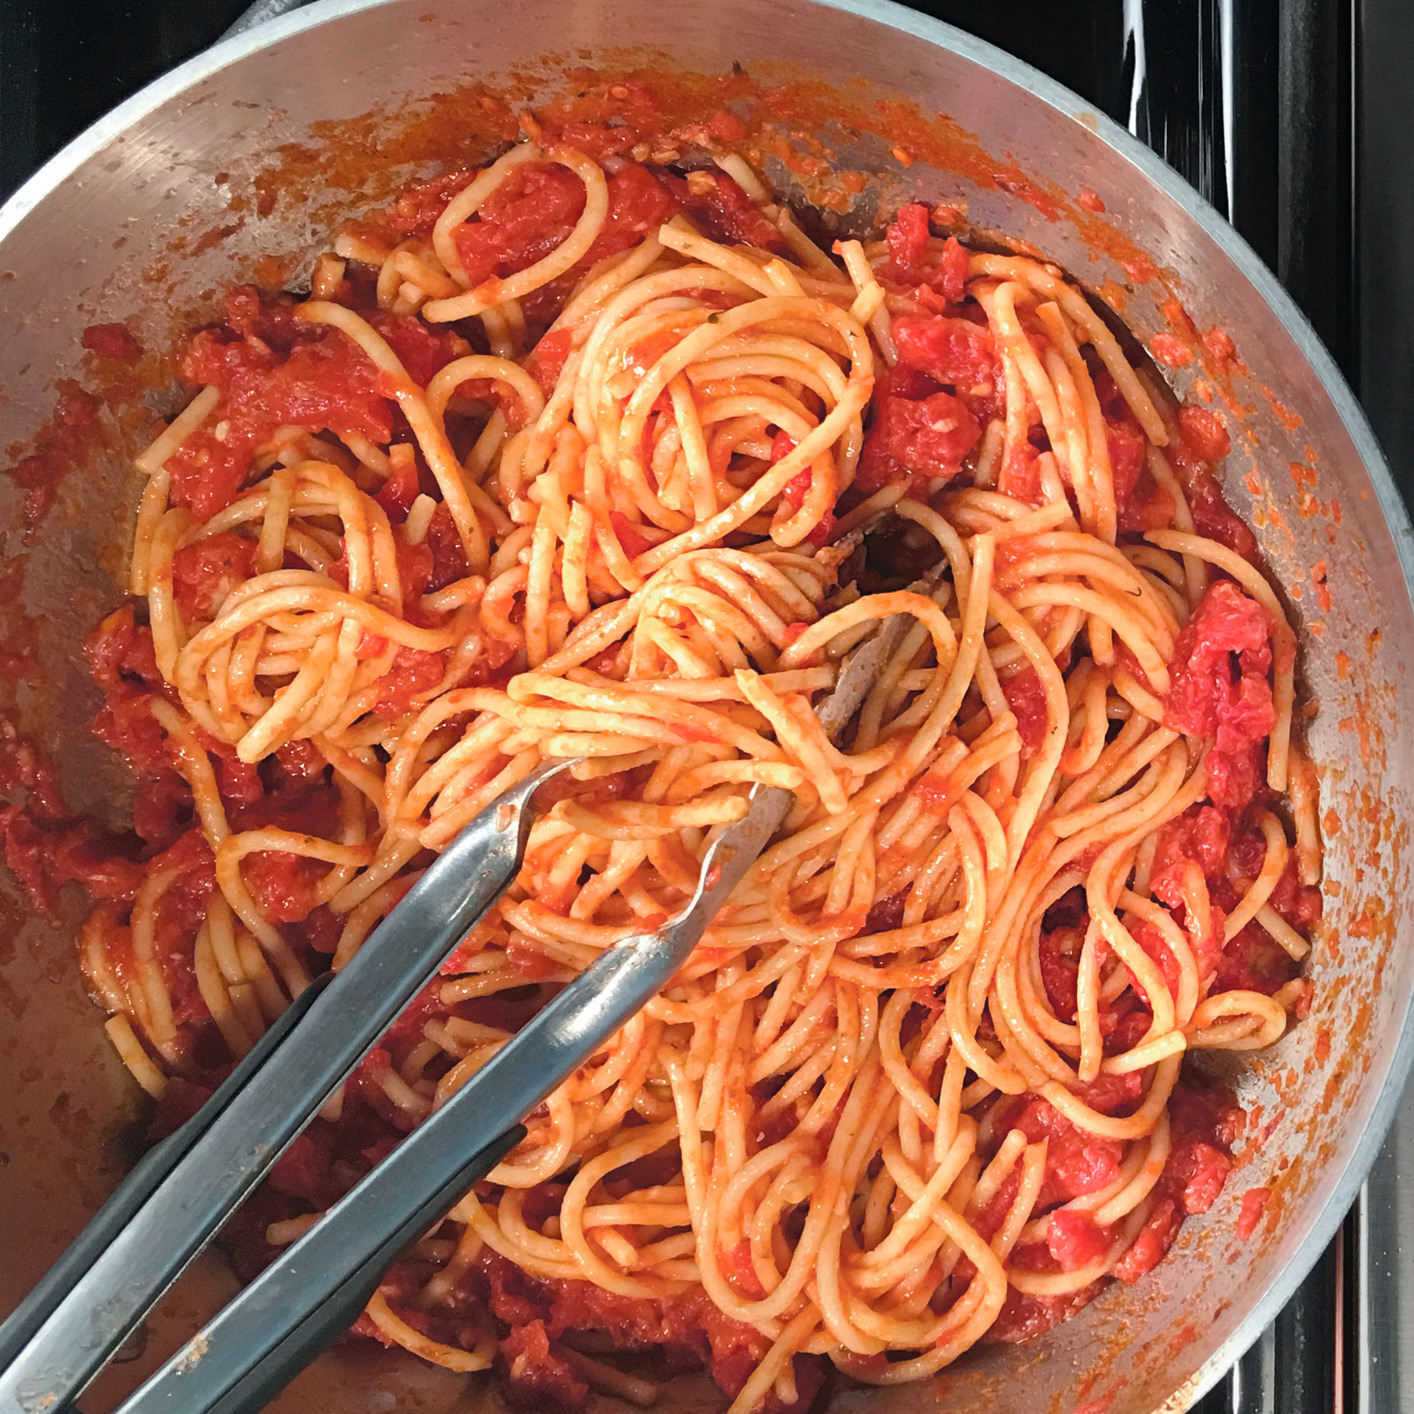 Weeknight Spaghetti